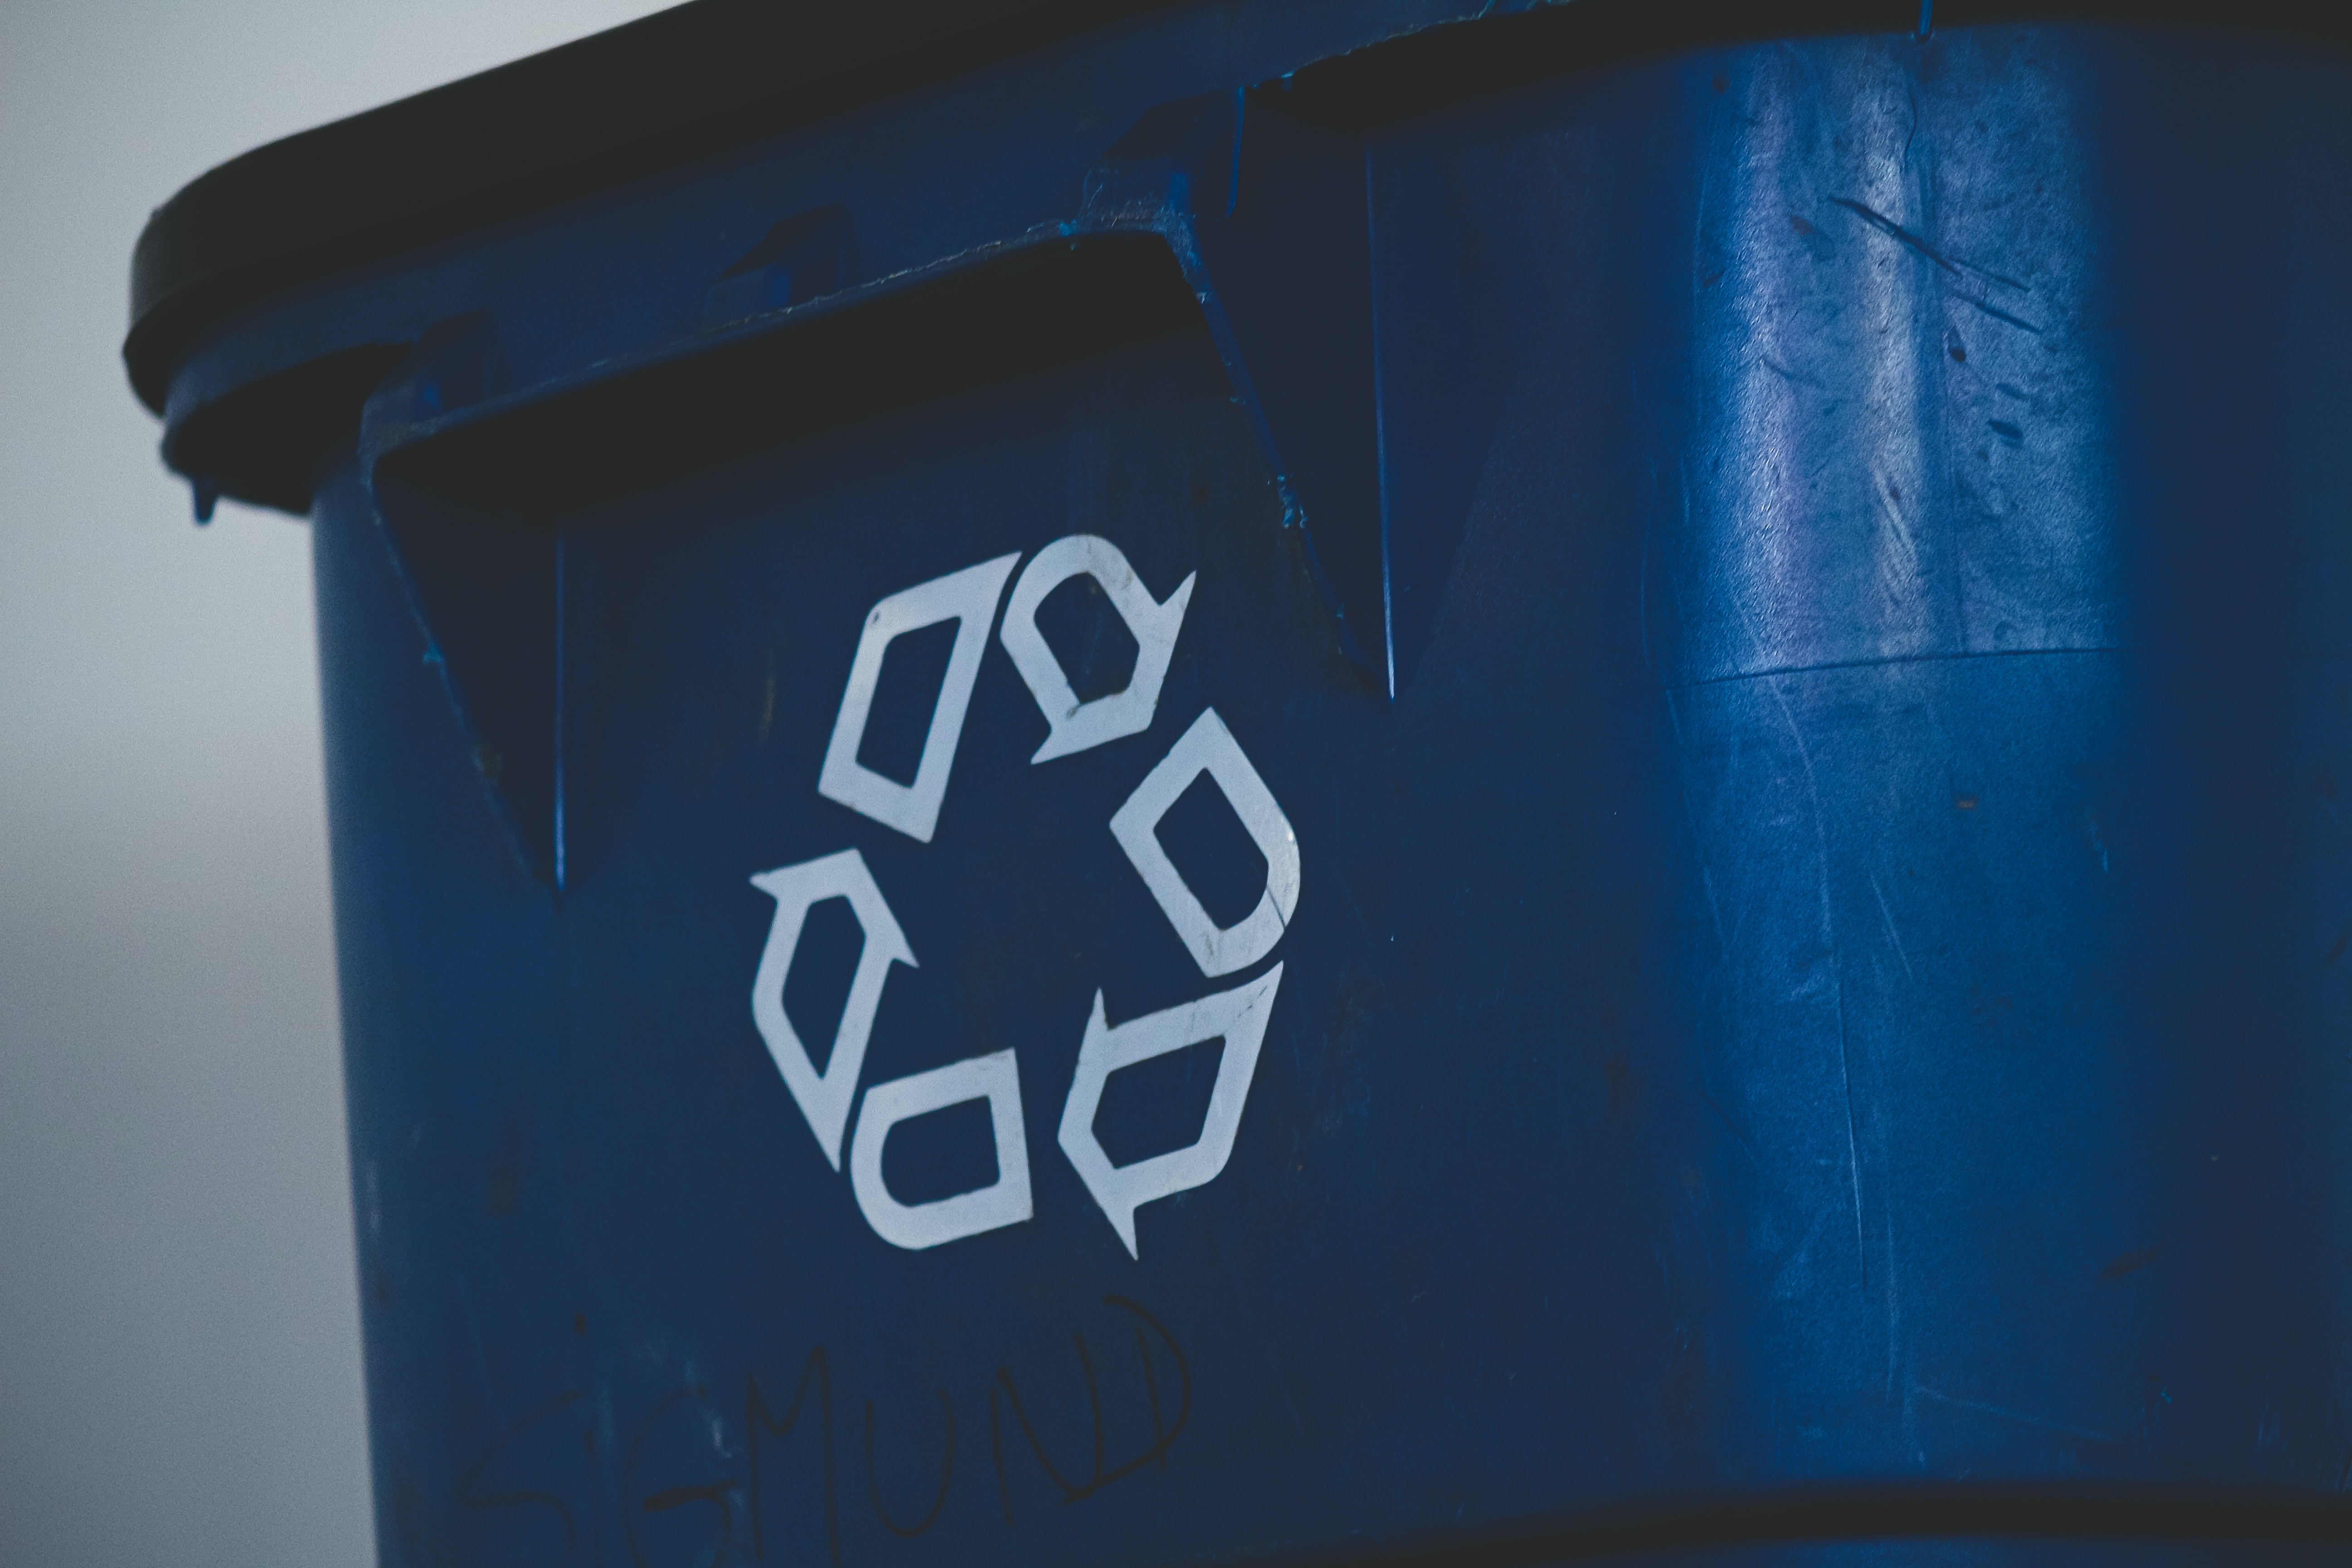 R3O EESTI OÜ - Treatment and disposal of non-hazardous waste in Estonia